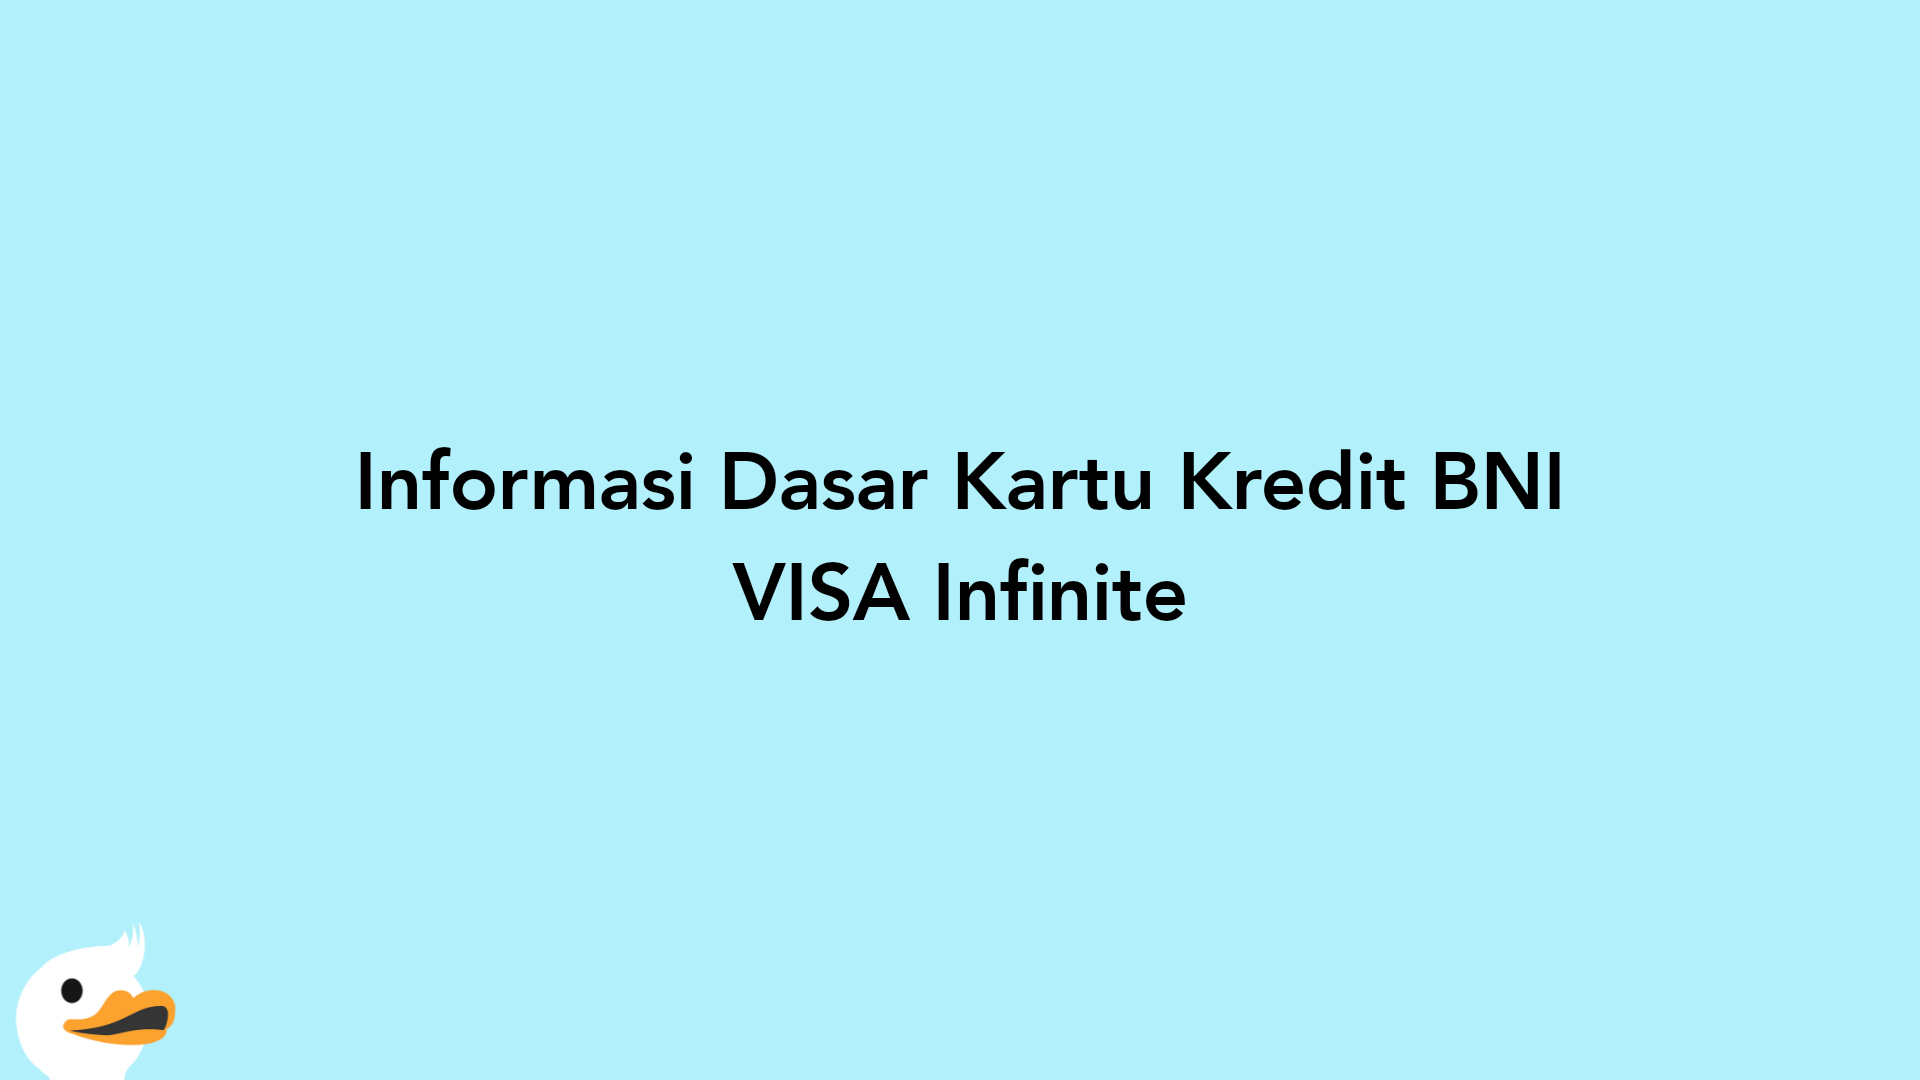 Informasi Dasar Kartu Kredit BNI VISA Infinite